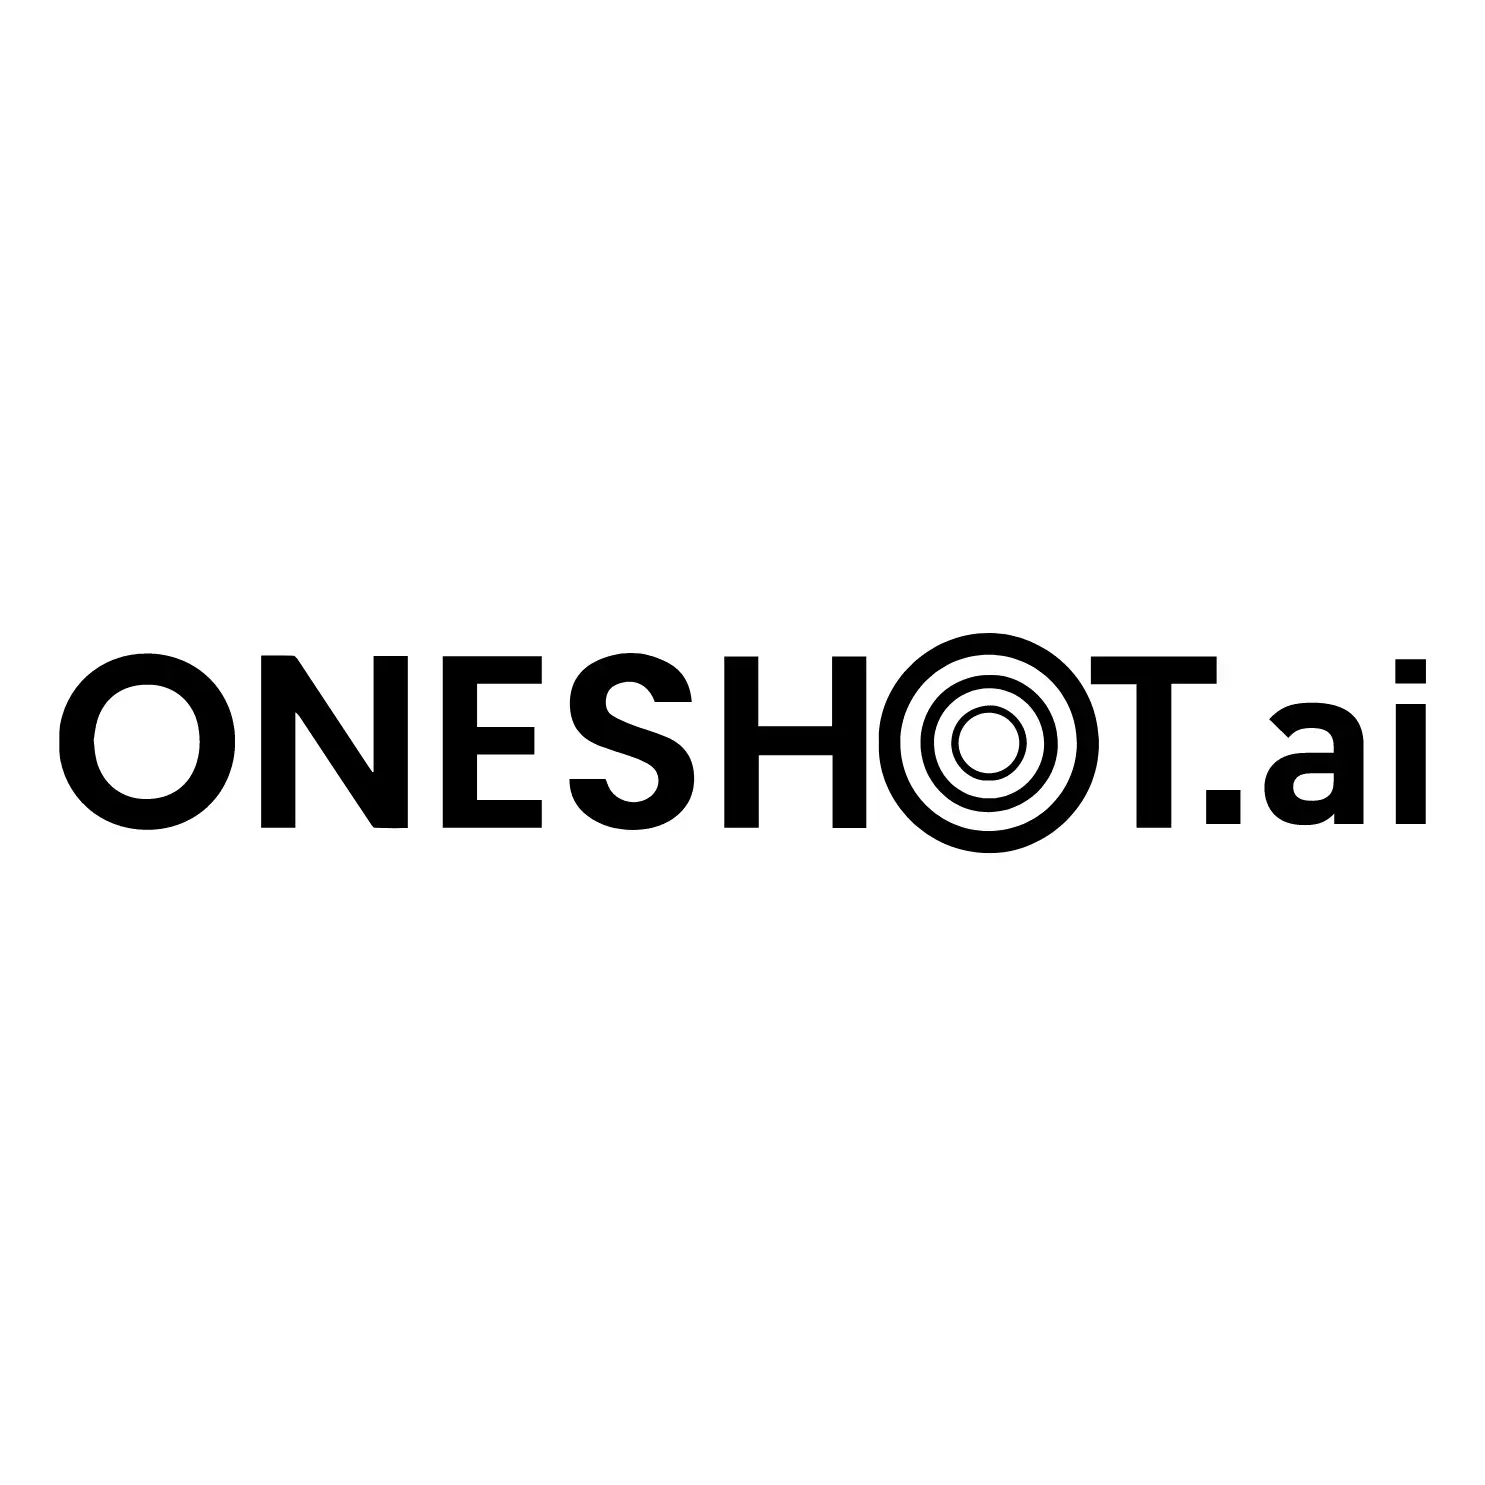 oneshot